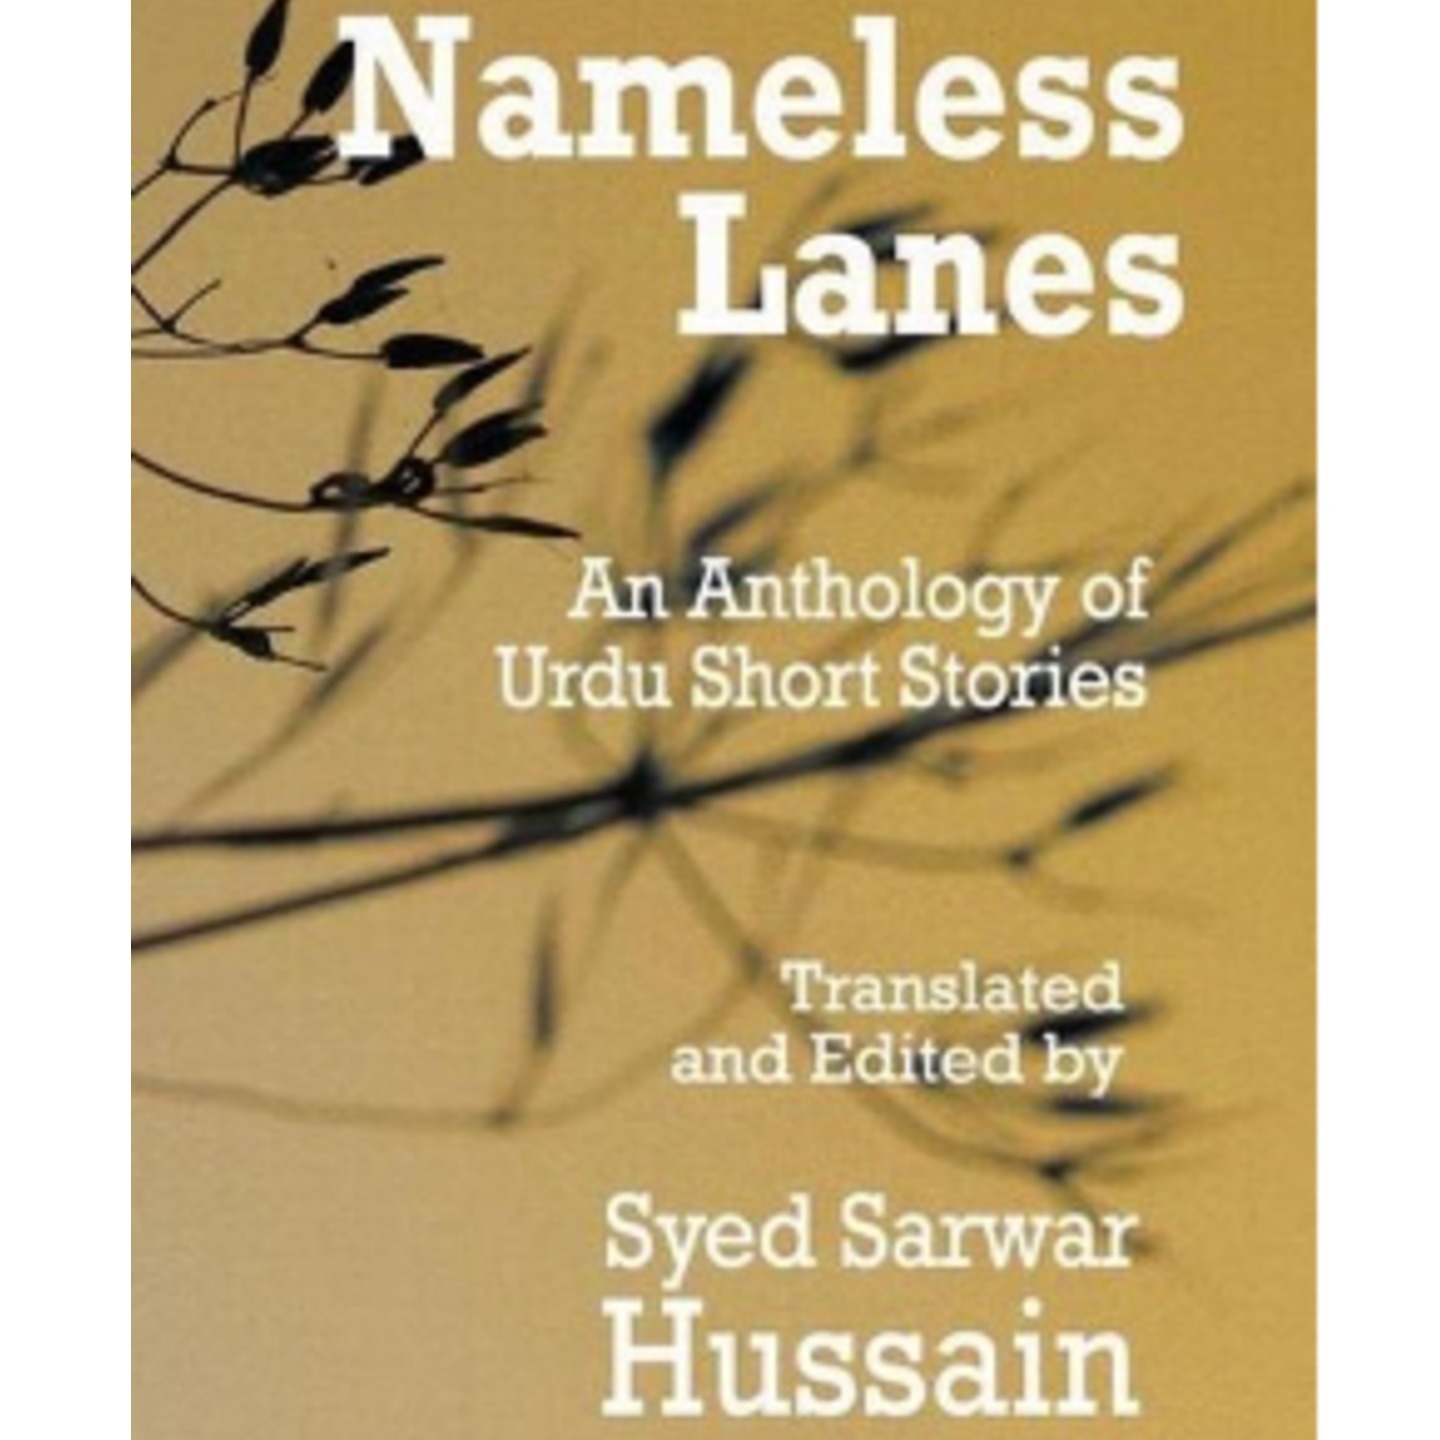 Nameless Lanes by Syed Sarwar Hussain